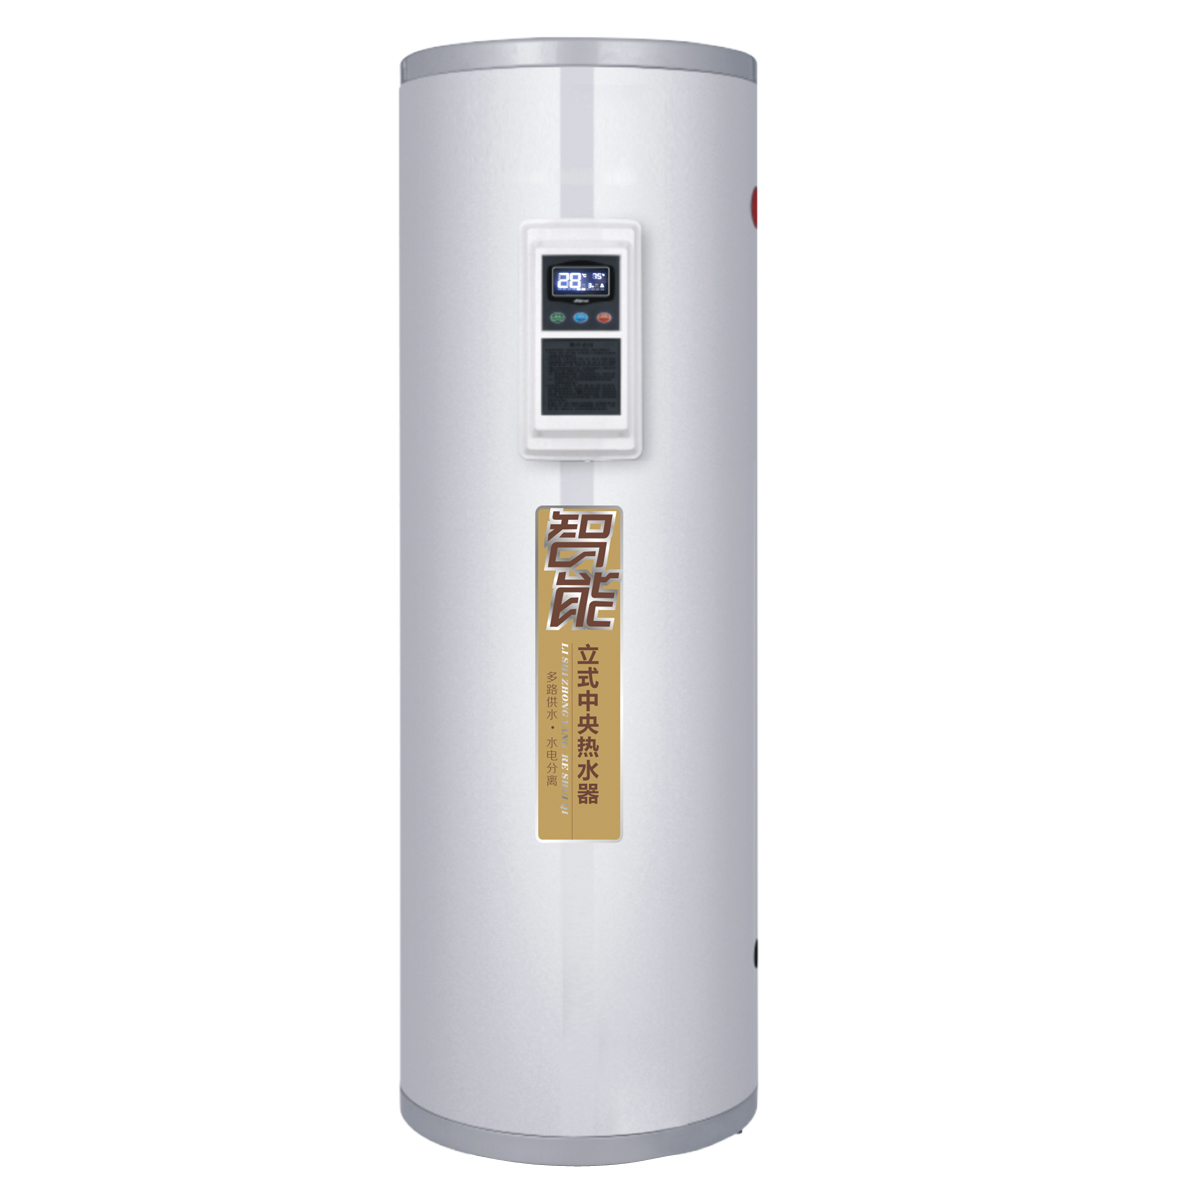 欧帝罗中央热水器电/家庭式中央热水器/家庭中央热水器品牌/电加热中央热水器